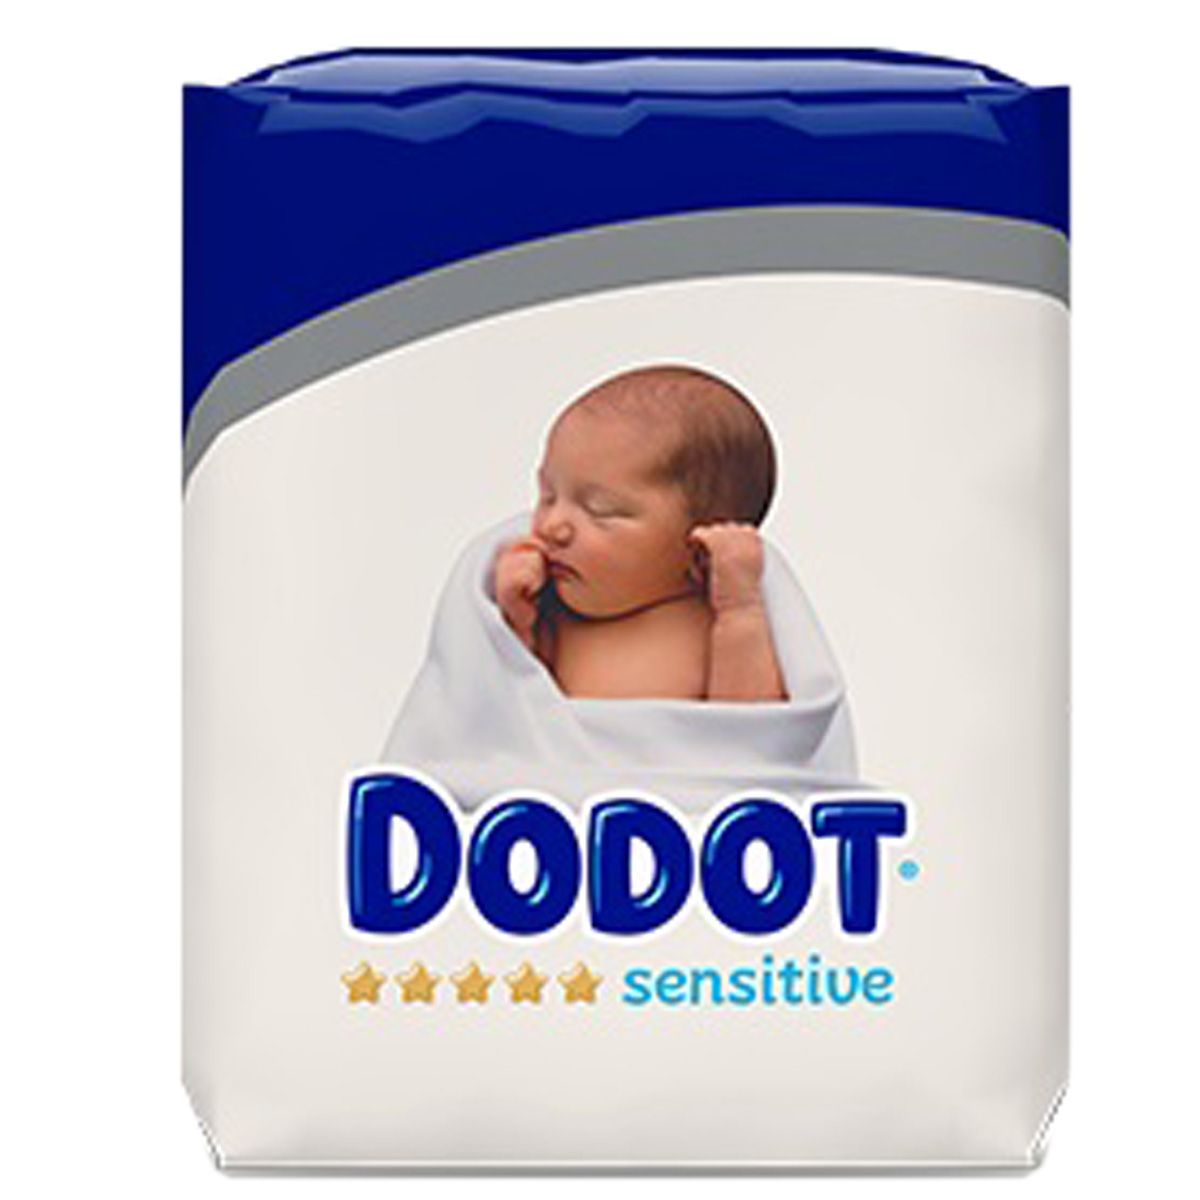 Pañales DODOT Sensitive talla 1 (de 2 a 5 kg) recién nacido caja 112 pañales  - La Farmacia de enfrente